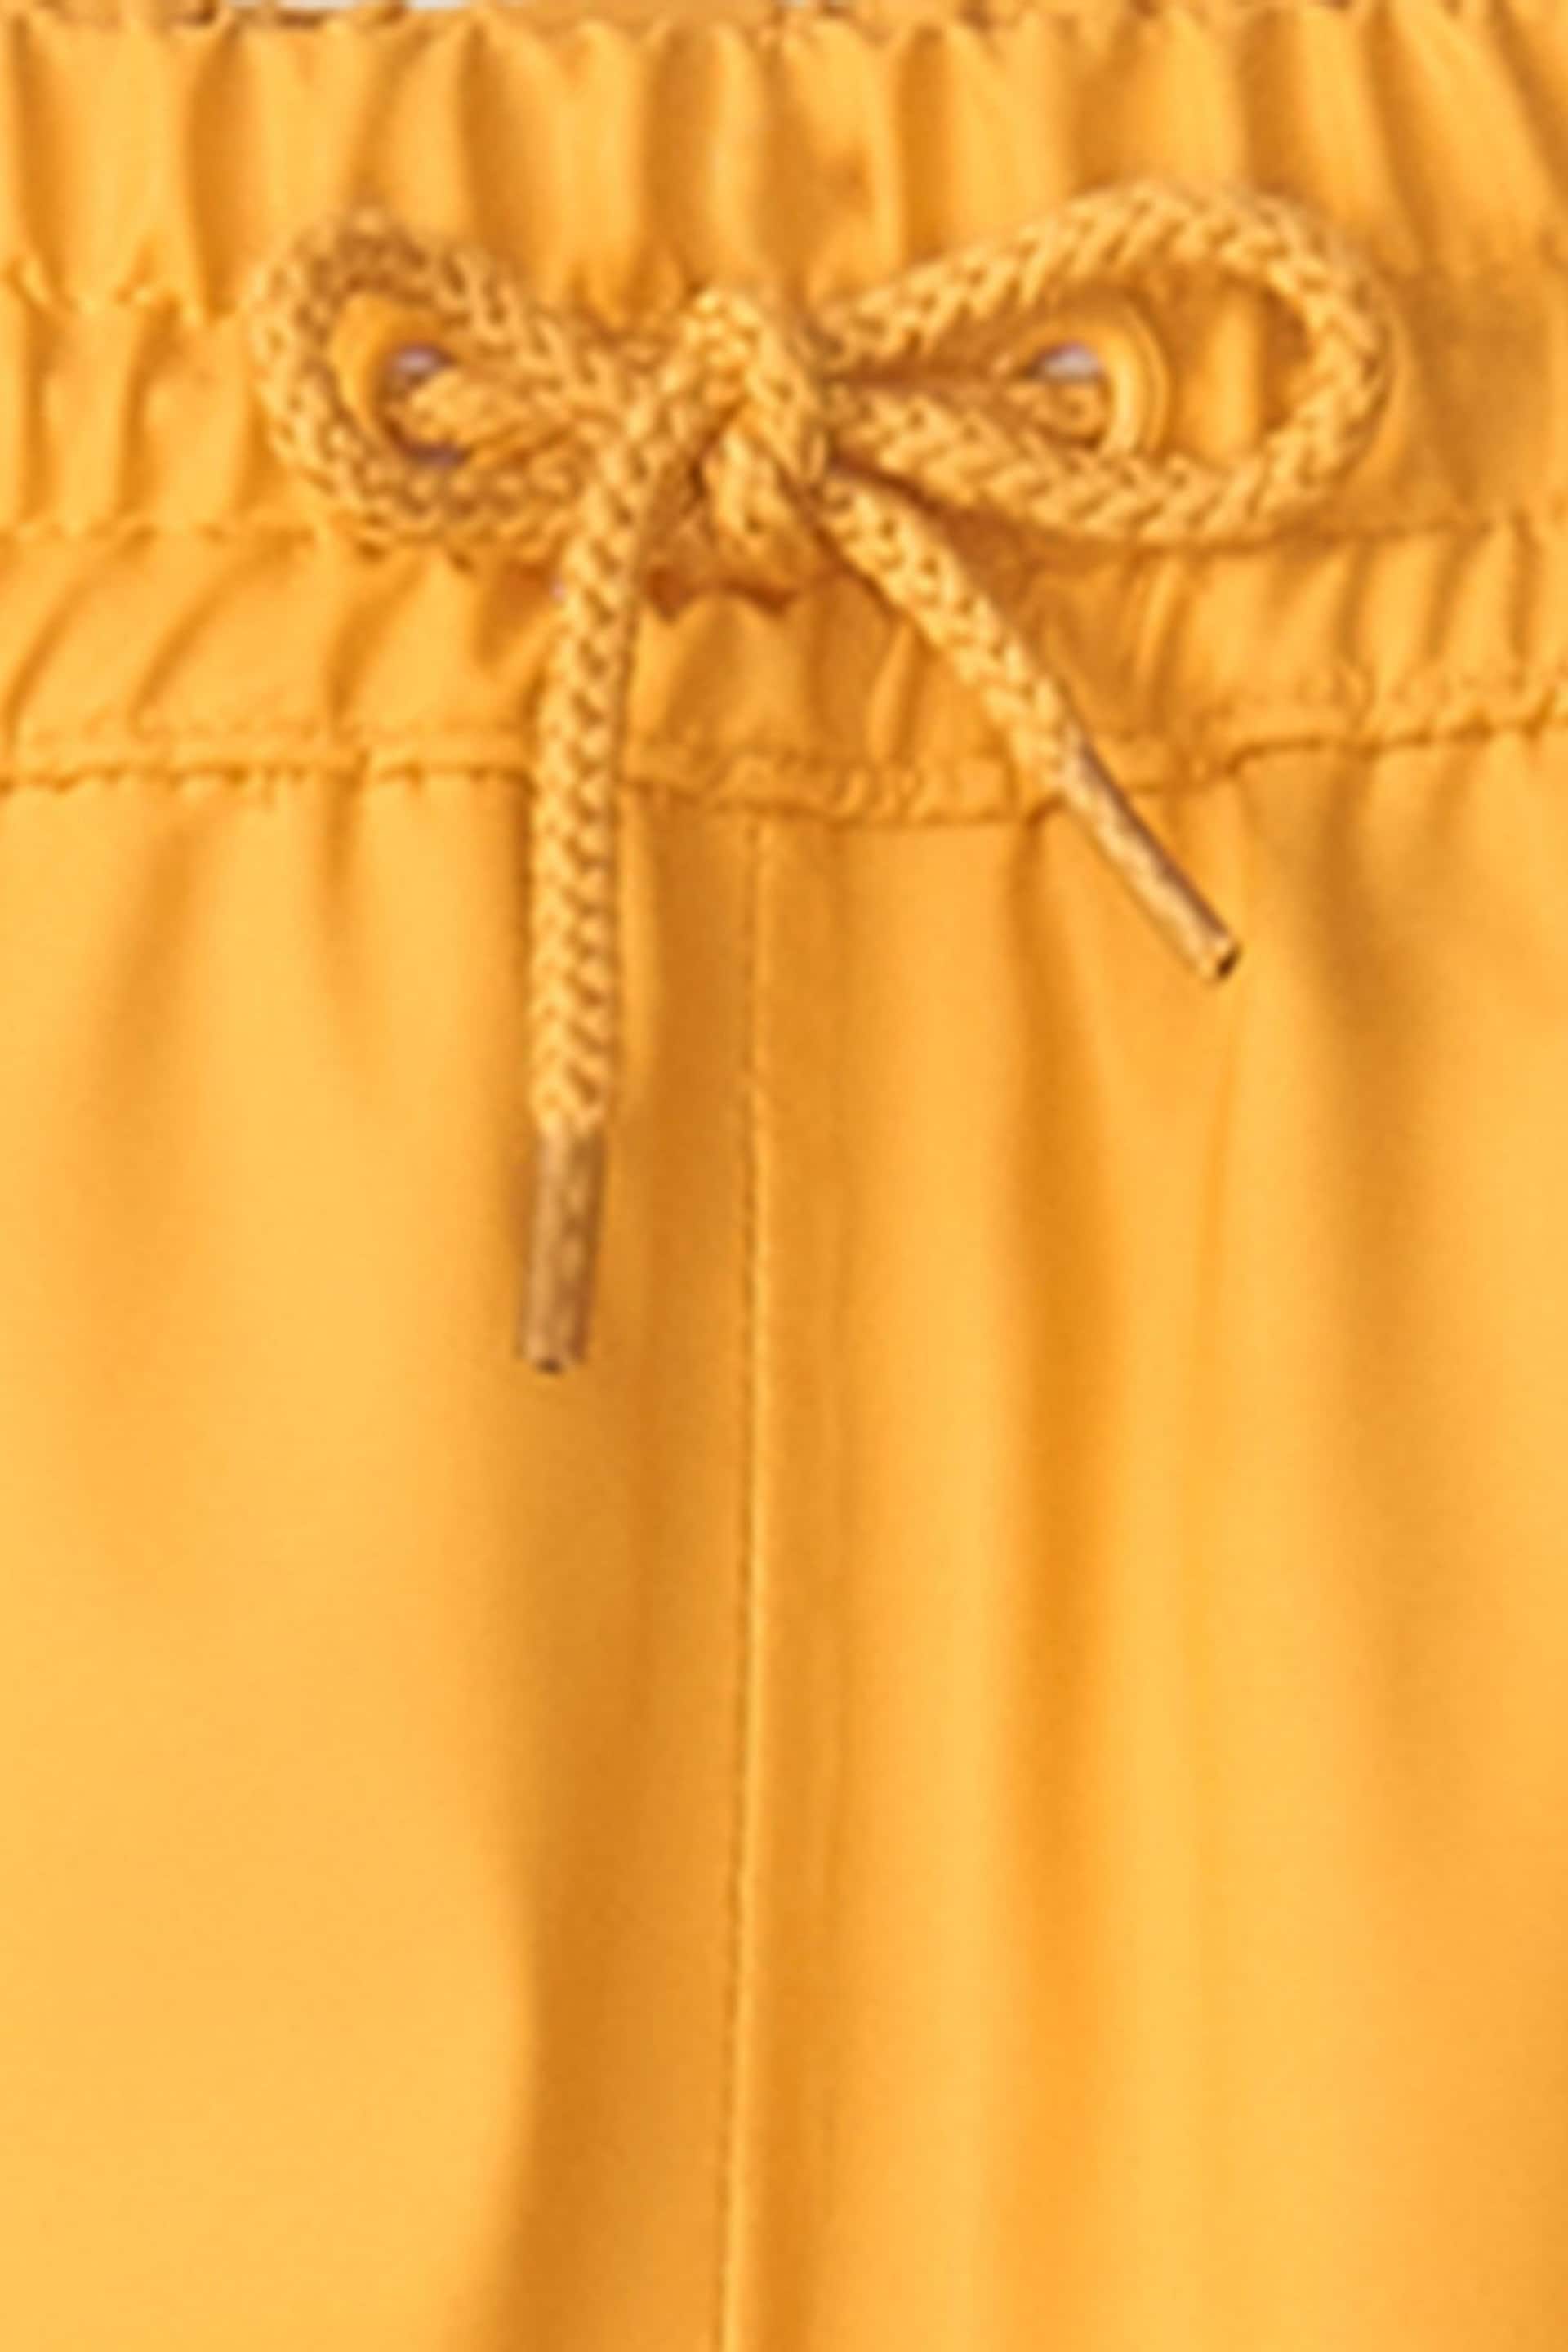 Hatley Waterproof Splash Trousers - Image 2 of 3